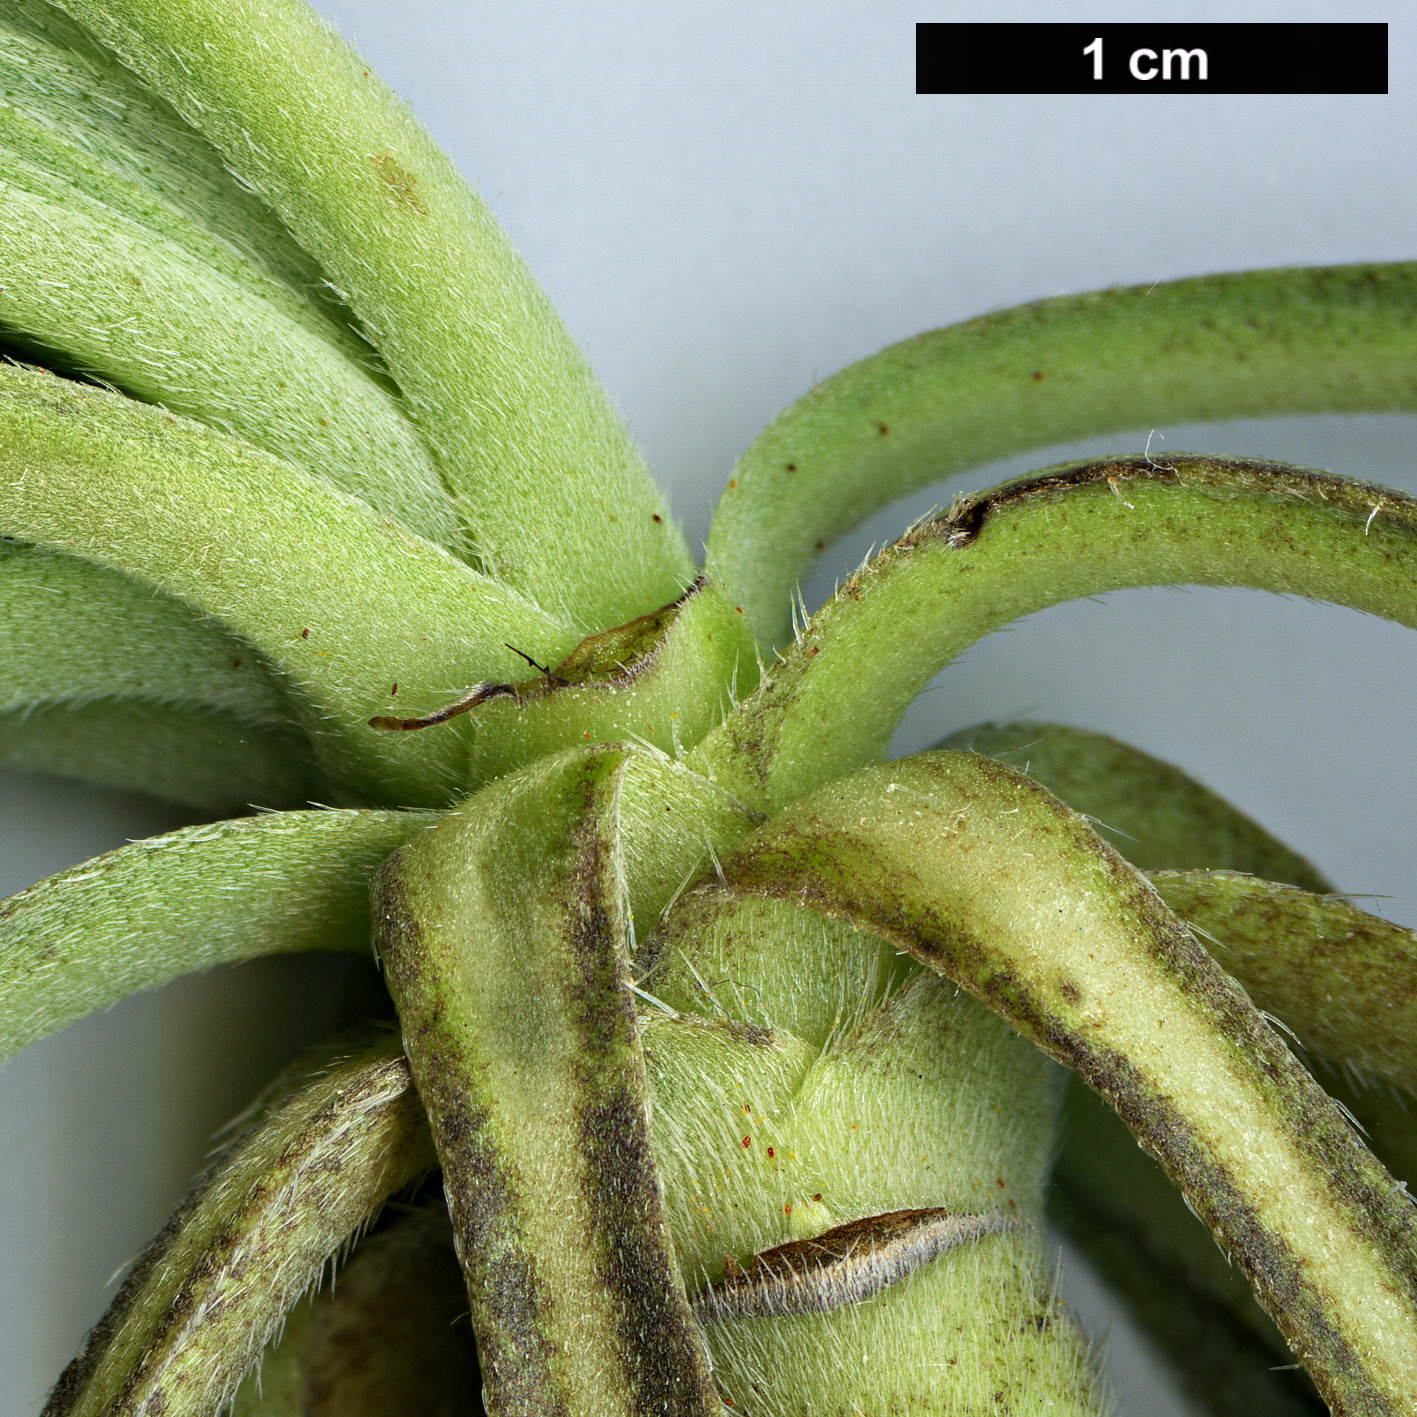 High resolution image: Family: Boraginaceae - Genus: Echium - Taxon: decaisnei